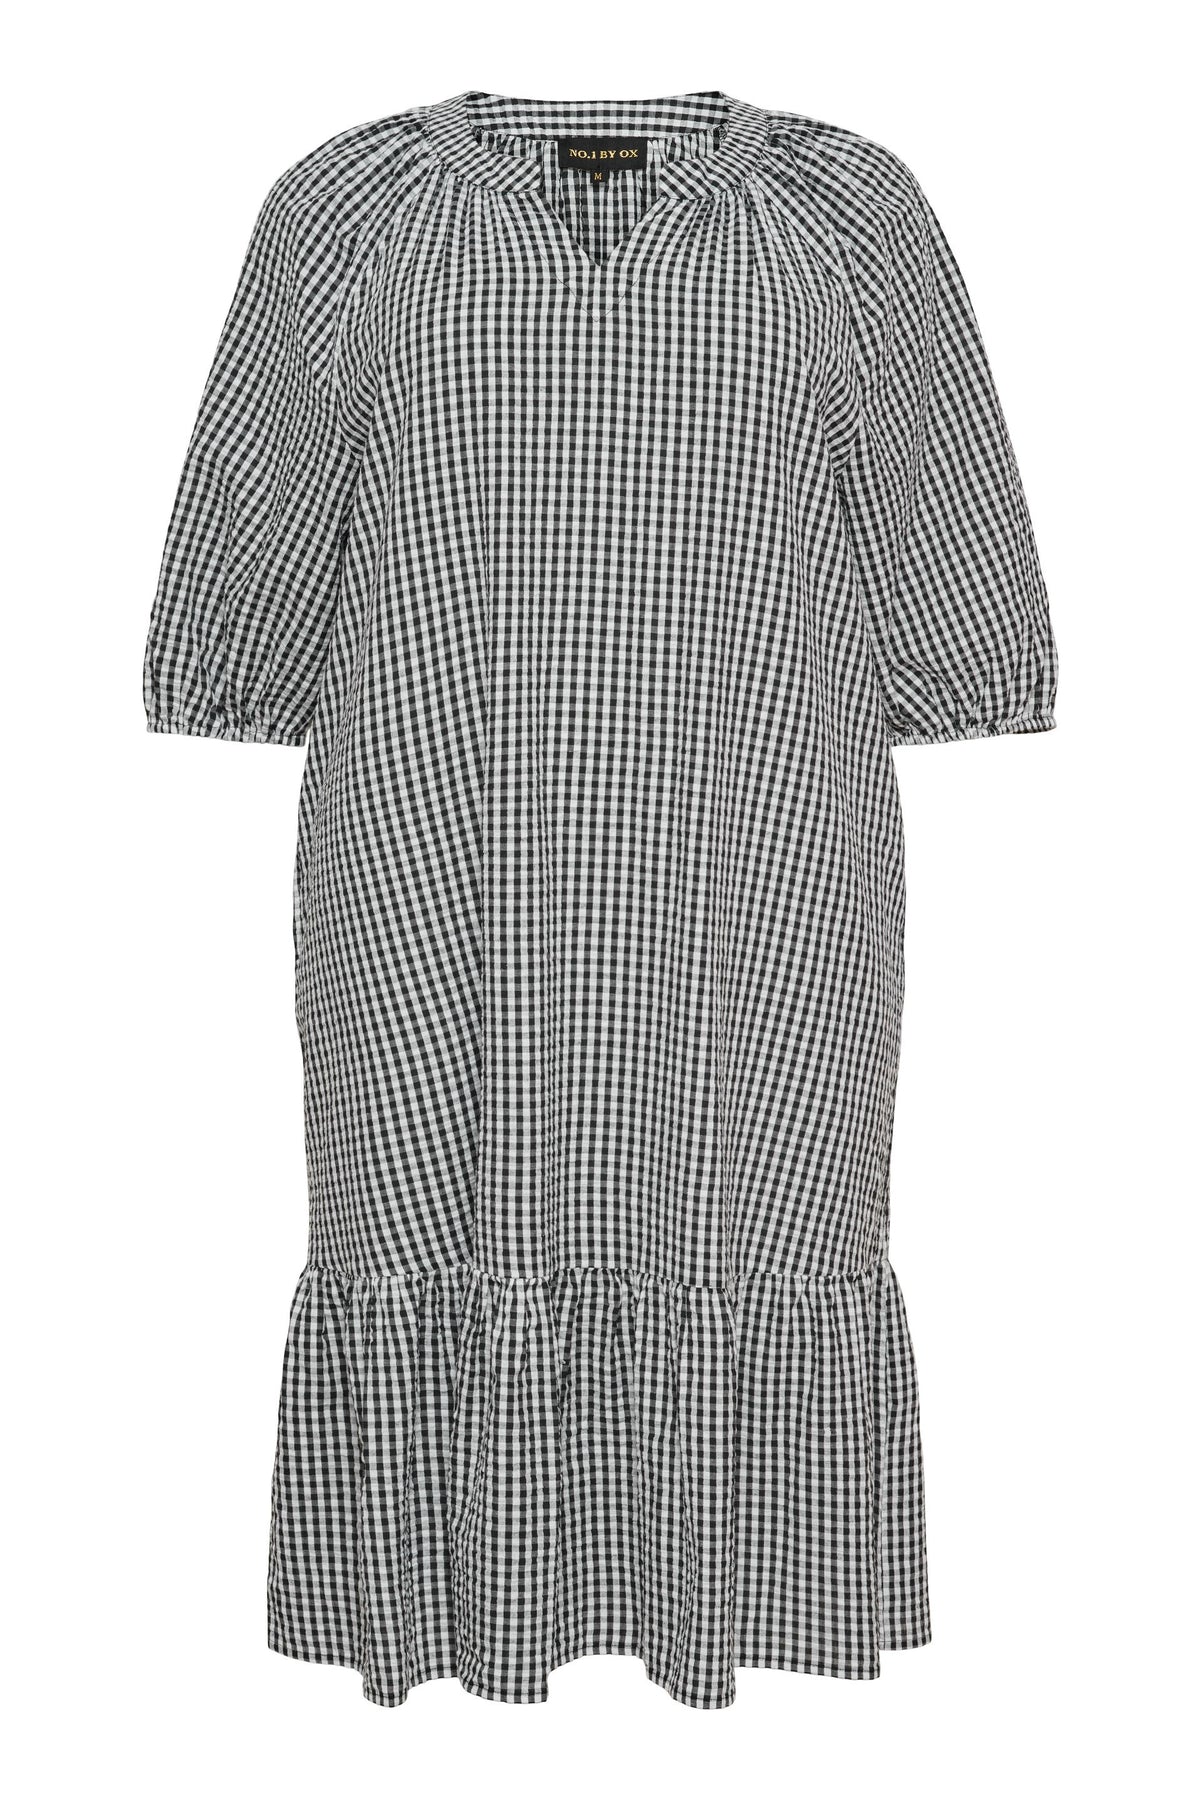 NO. 1 BY OX Midi-kjole med flæsekant Kjoler Sort